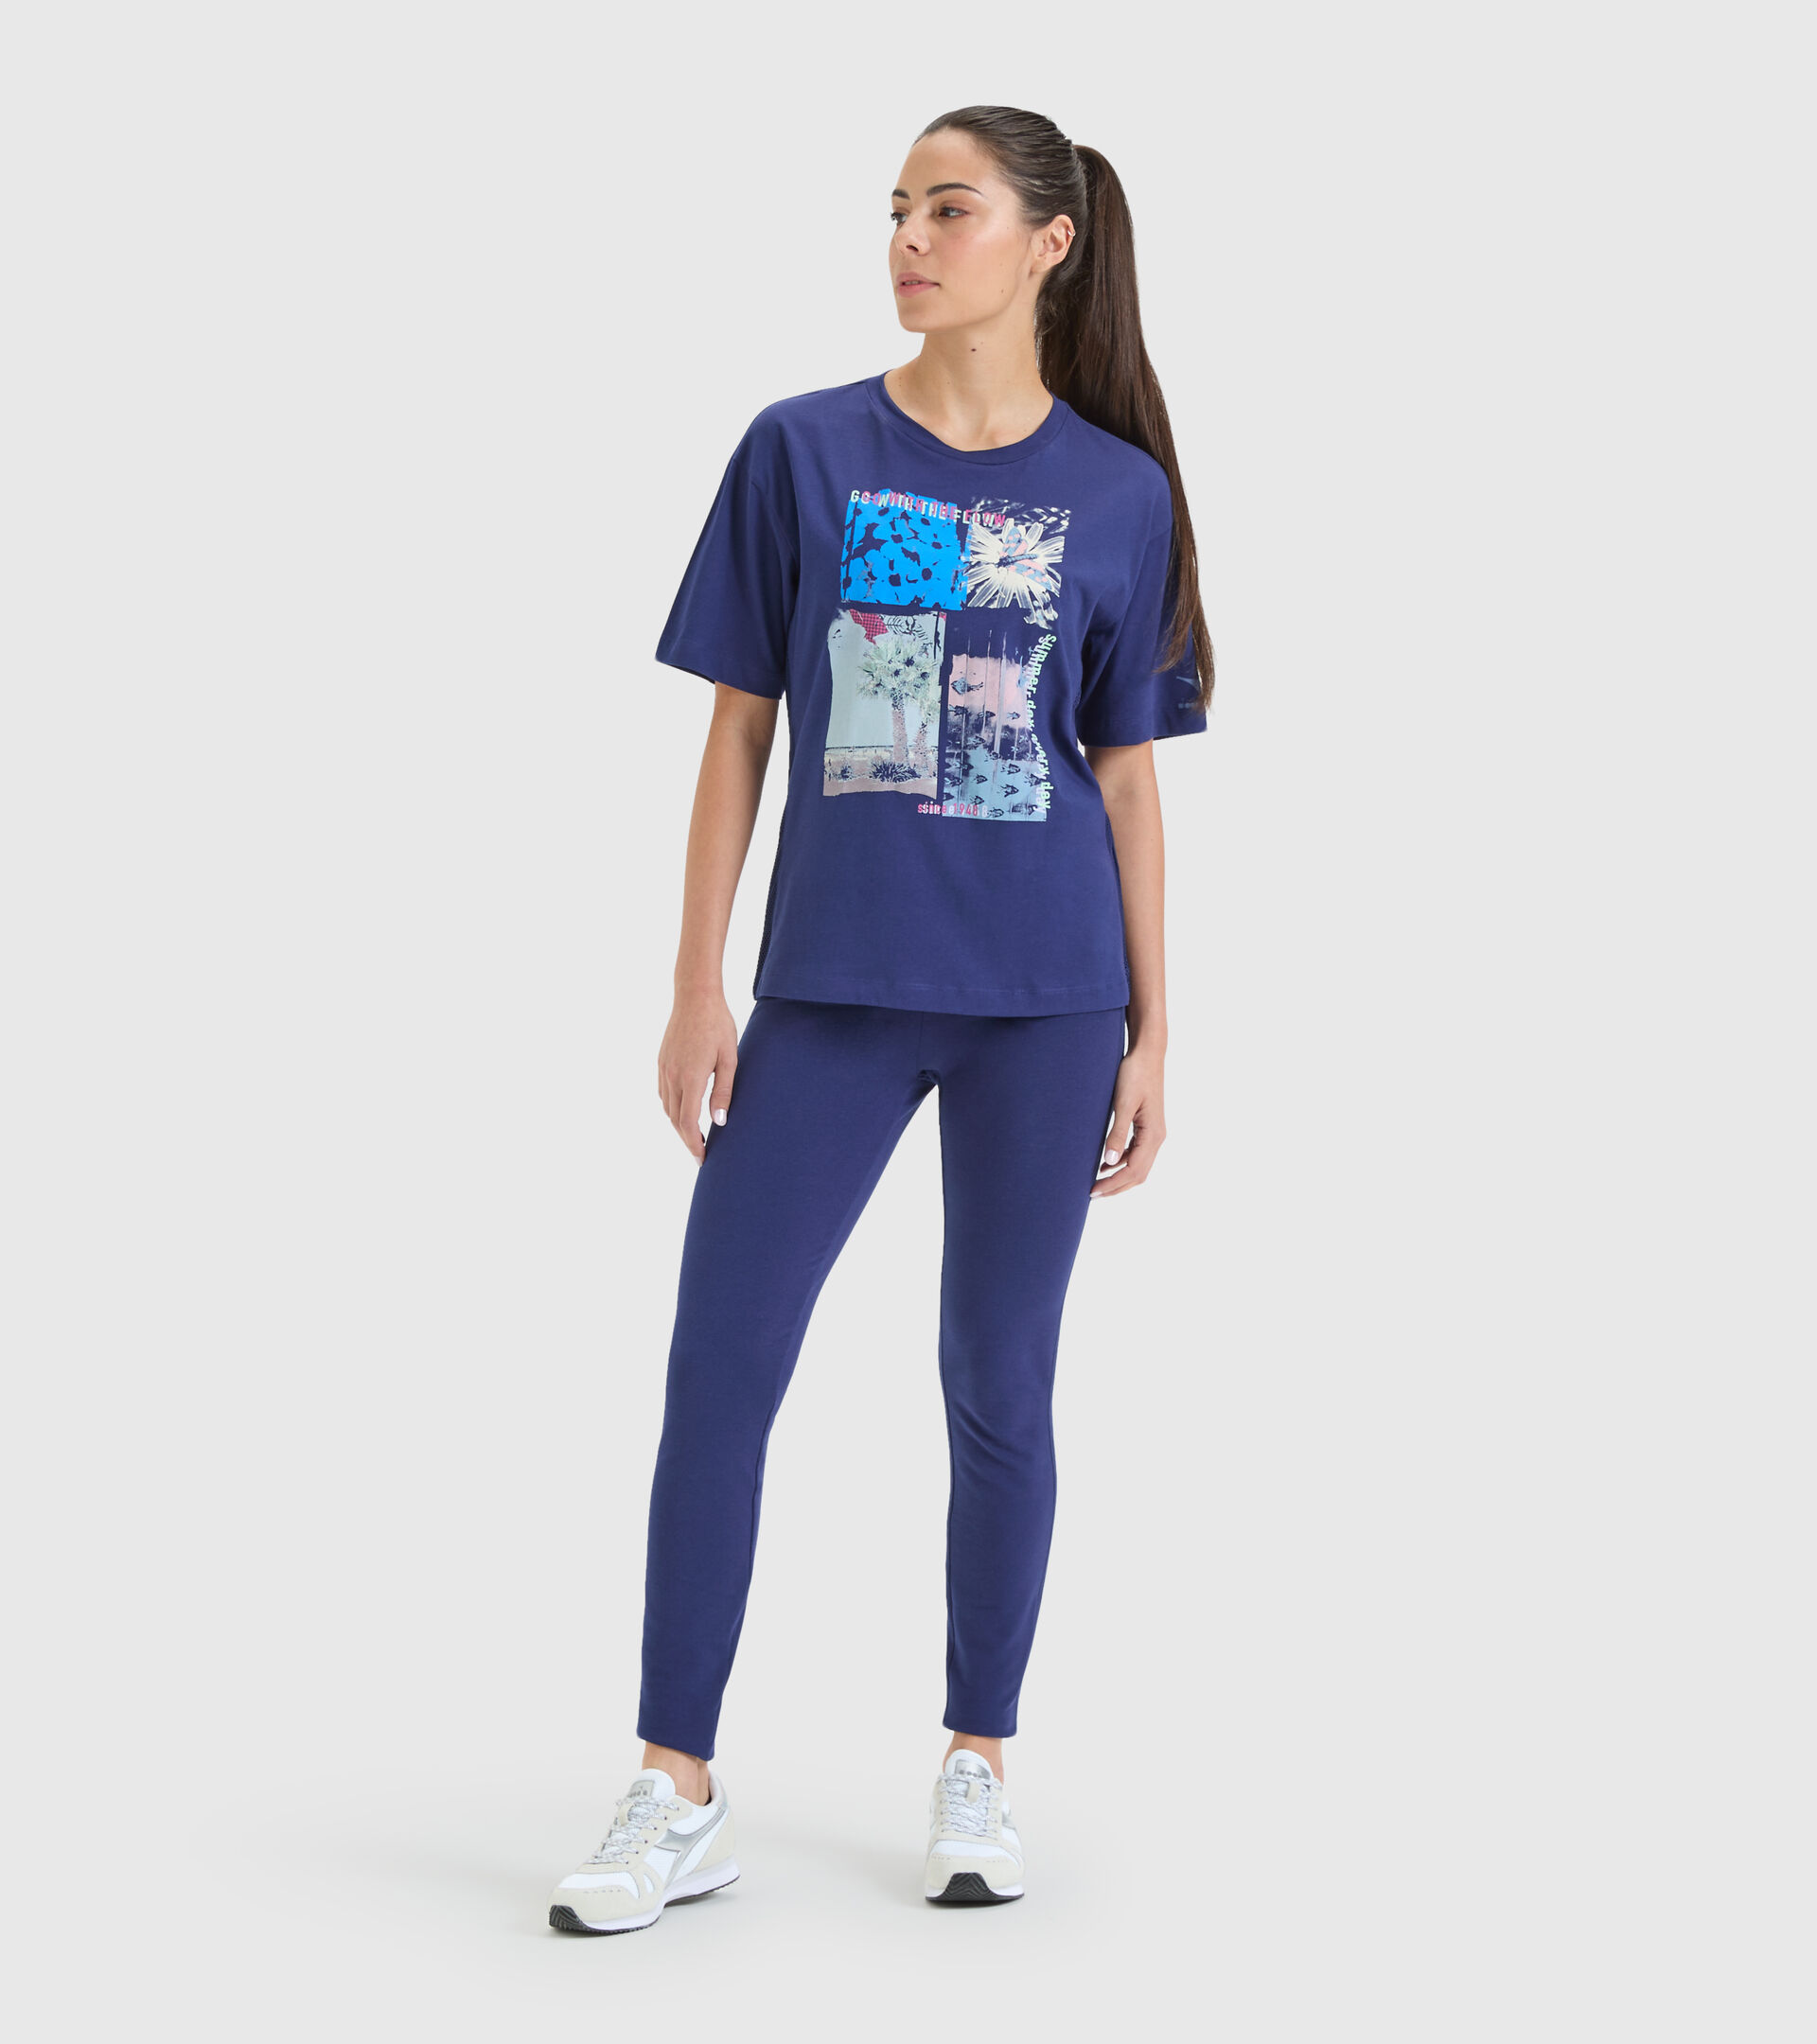 Cotton sports T-shirt - Women L. T-SHIRT SS FLOW DEEP COBALT BLUE - Diadora